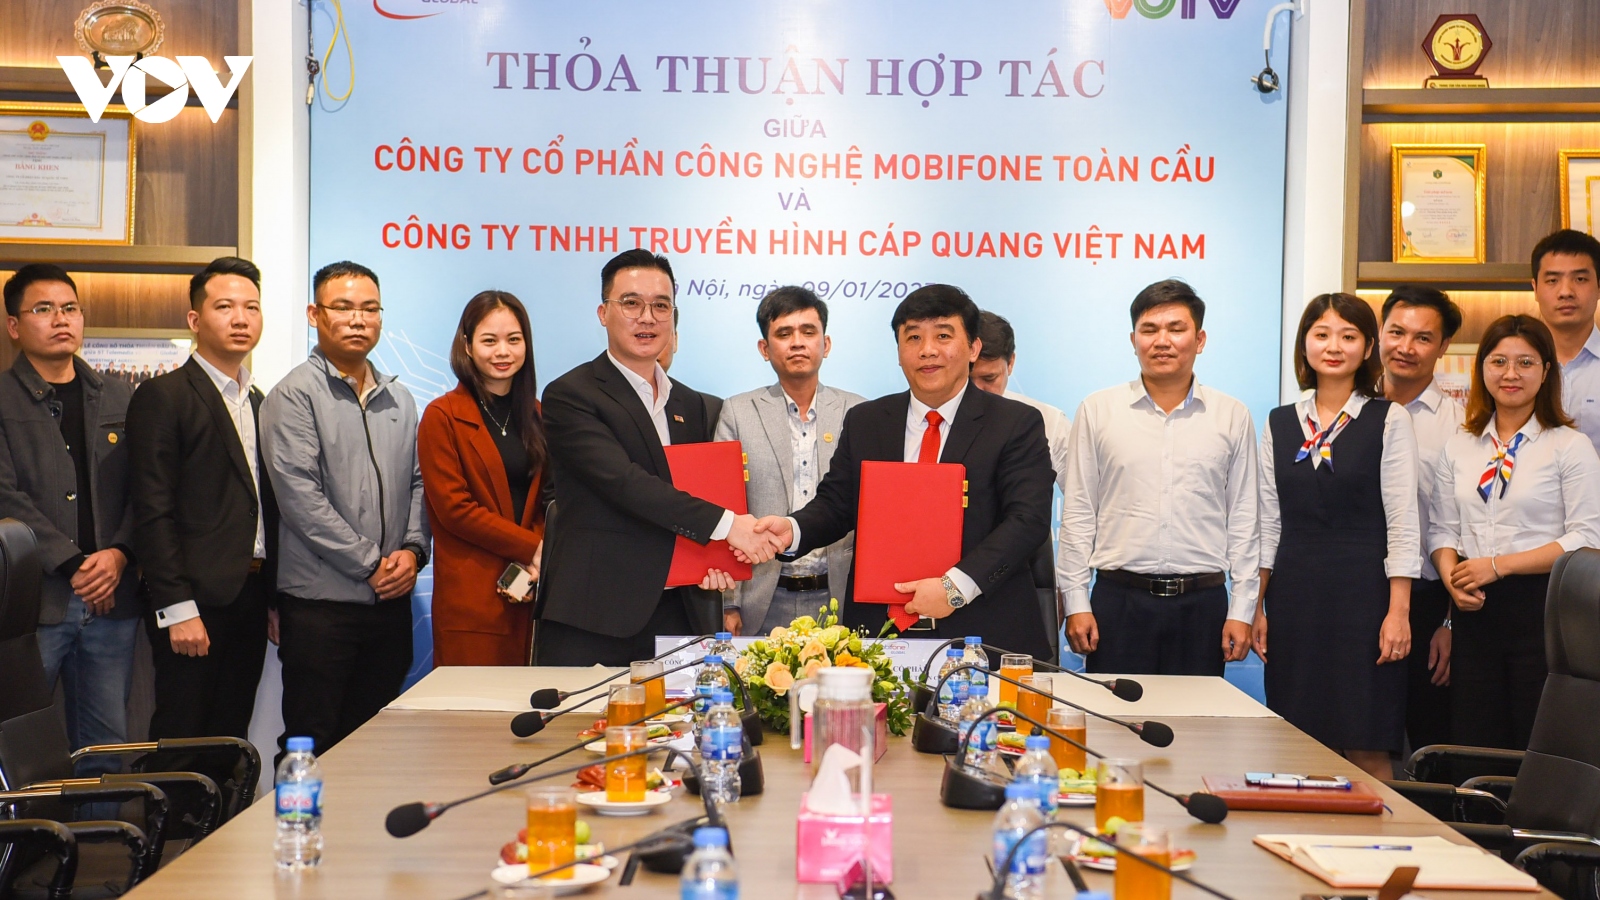 Truyền hình Cáp quang Việt Nam ký thỏa thuận hợp tác viễn thông với MobiFone Toàn Cầu